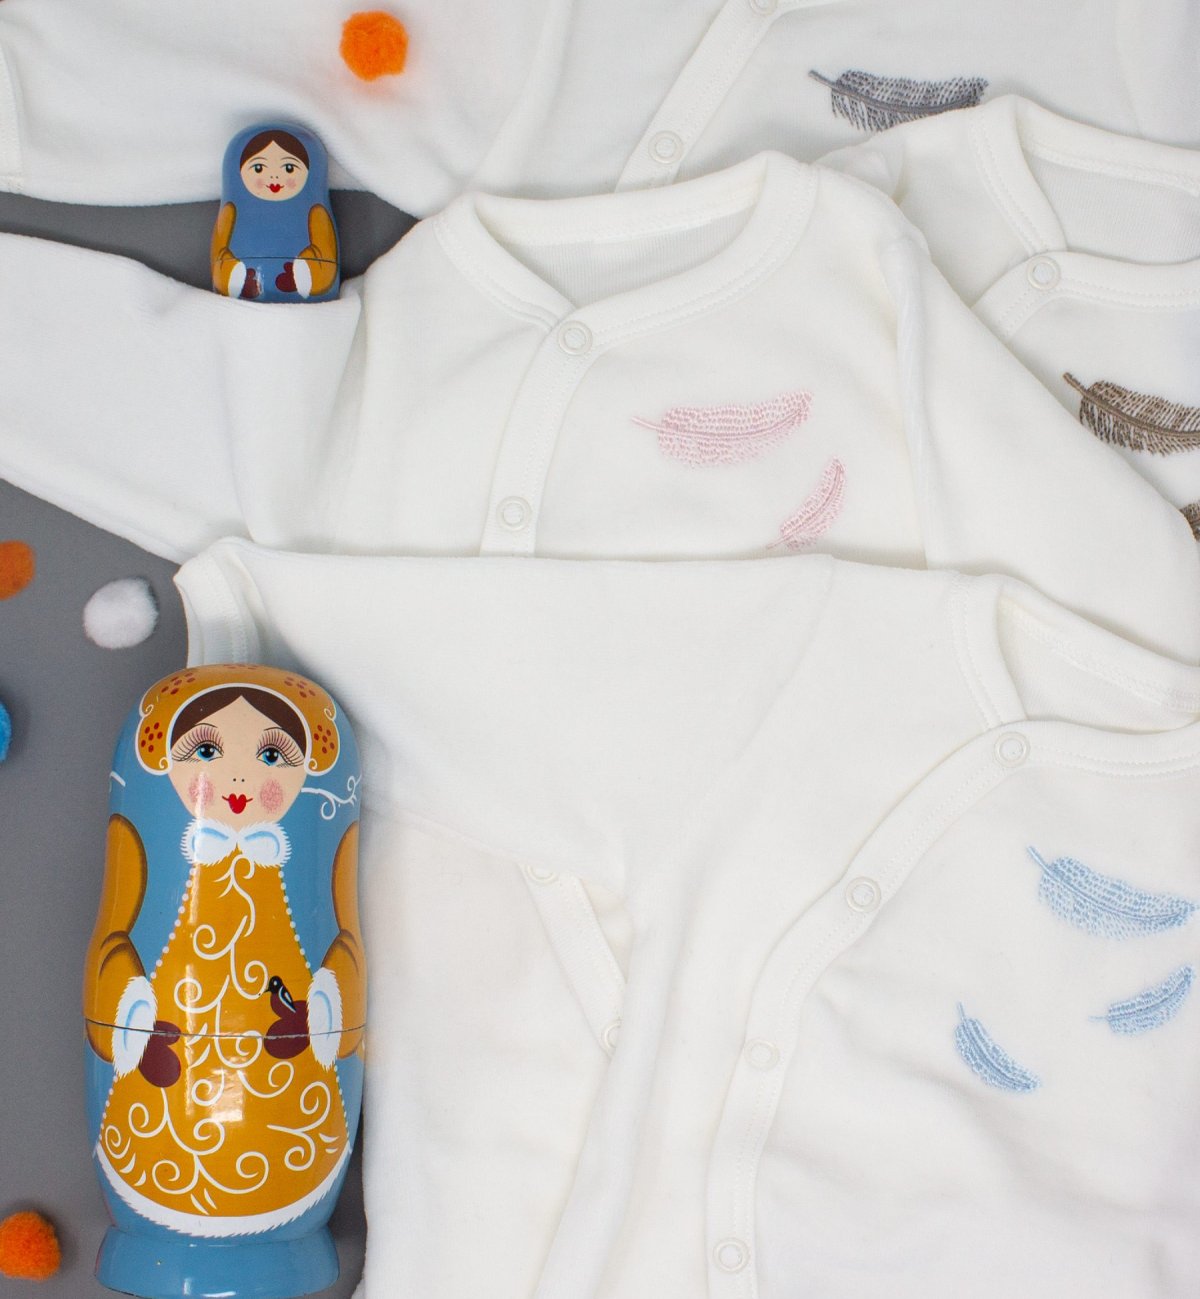 Baby katoenen pyjama's met kleurrijke geborduurde verenpatronen